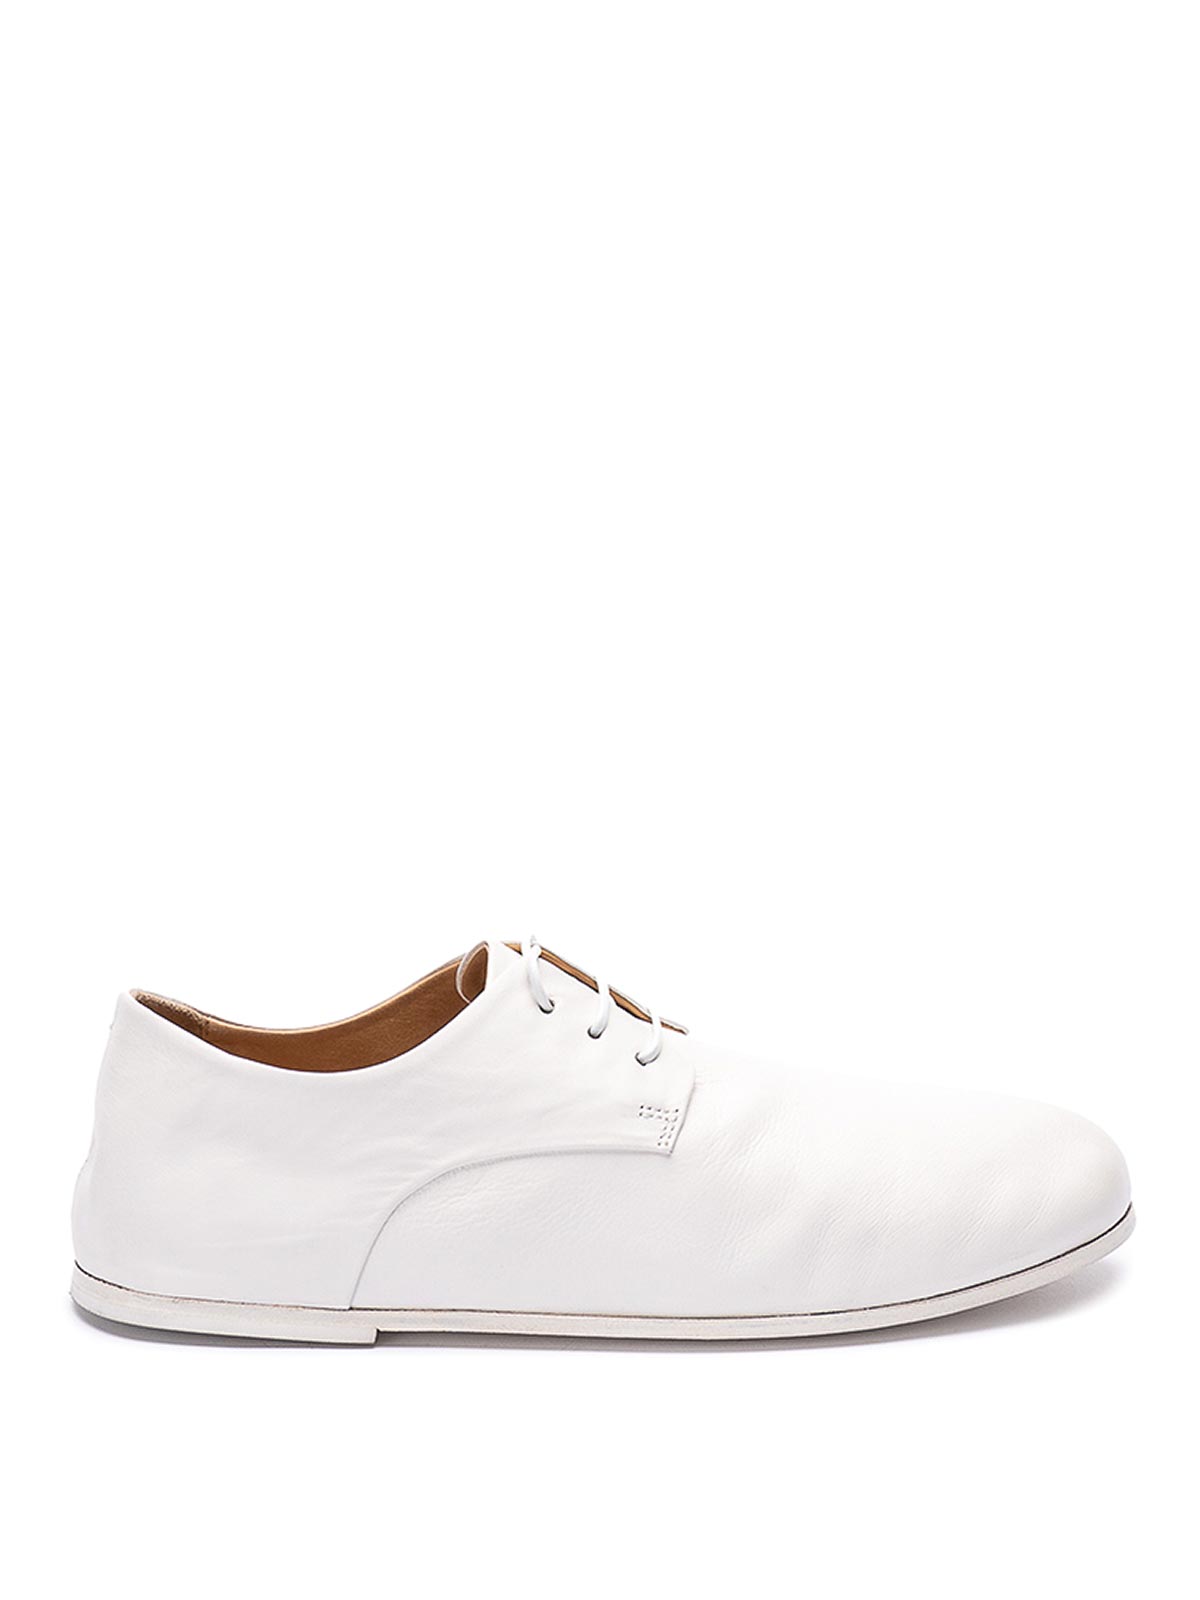 Marsèll Zapatos Con Cordones - Steccoblocco In White